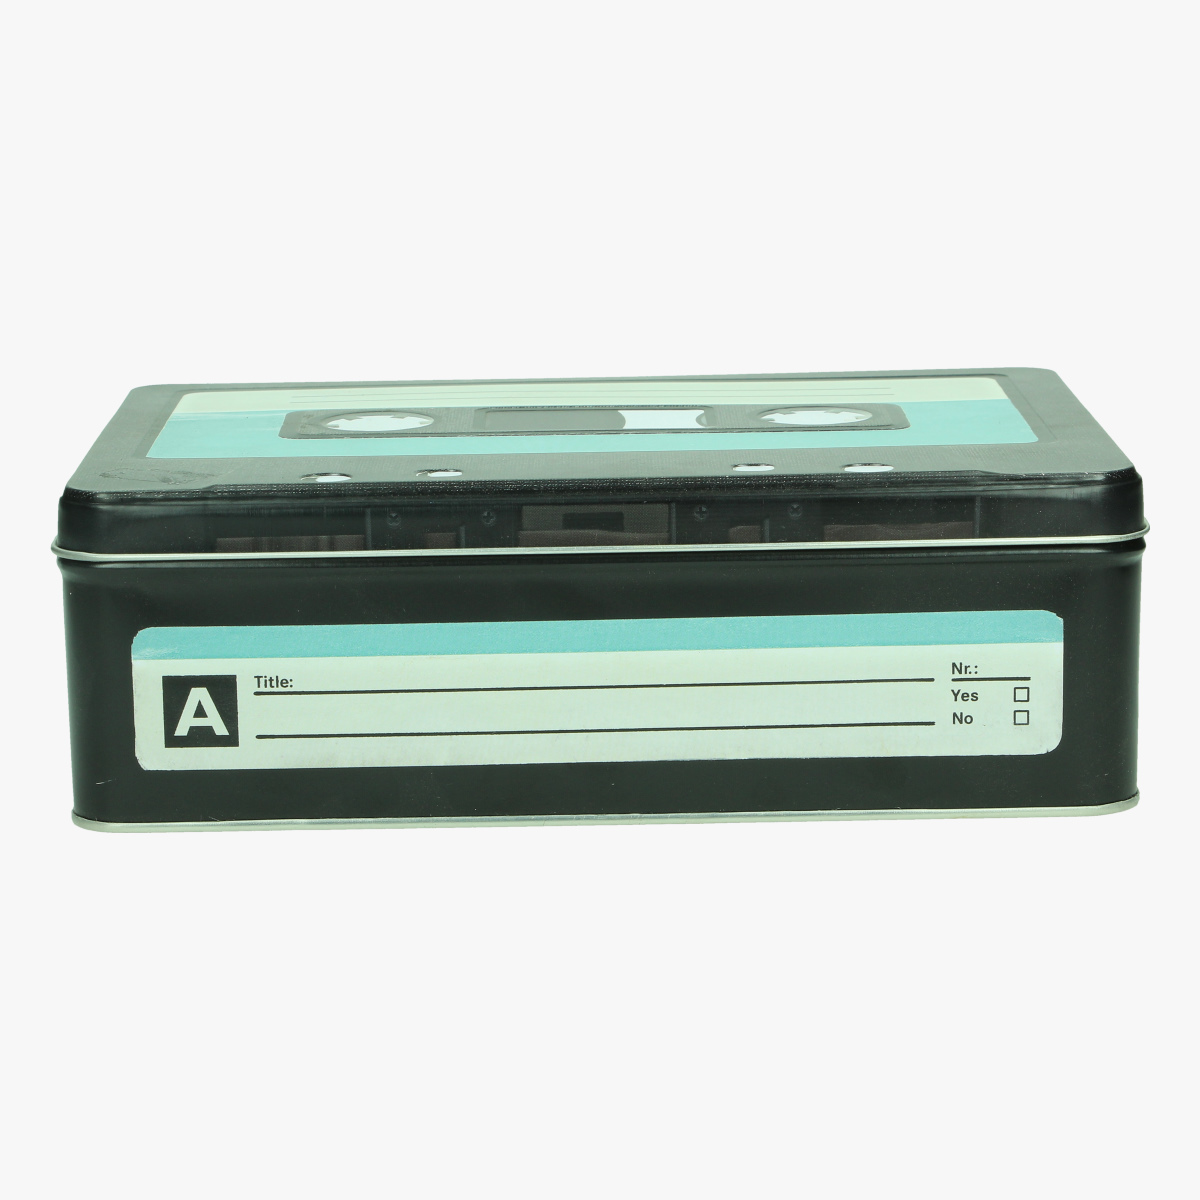 Afbeeldingen van blikkenn doos cassette